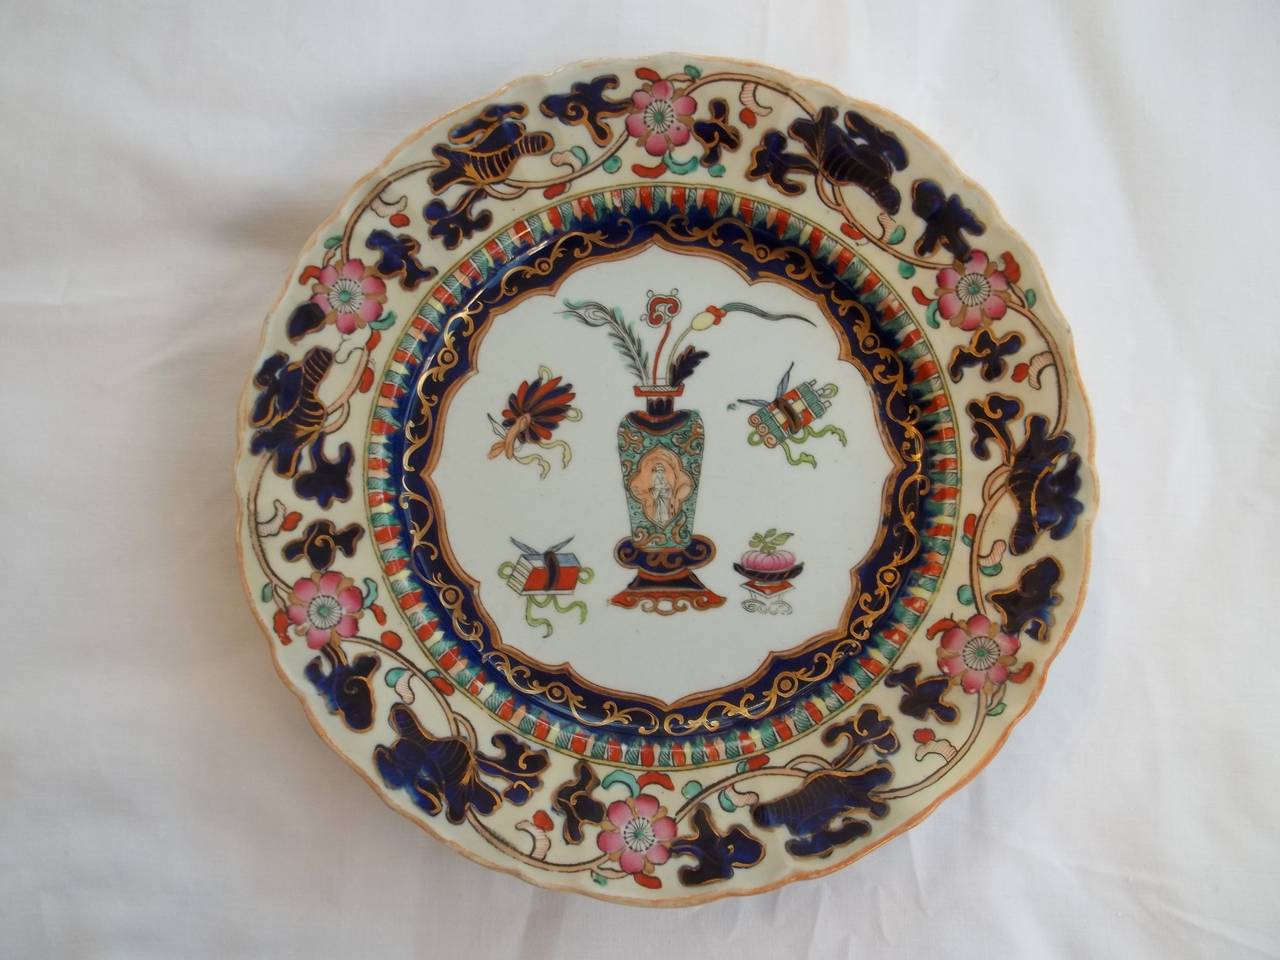 Chinoiserie Mason's Ironstone Dinner Plates Chinese Antiquities Pattern, circa 1840